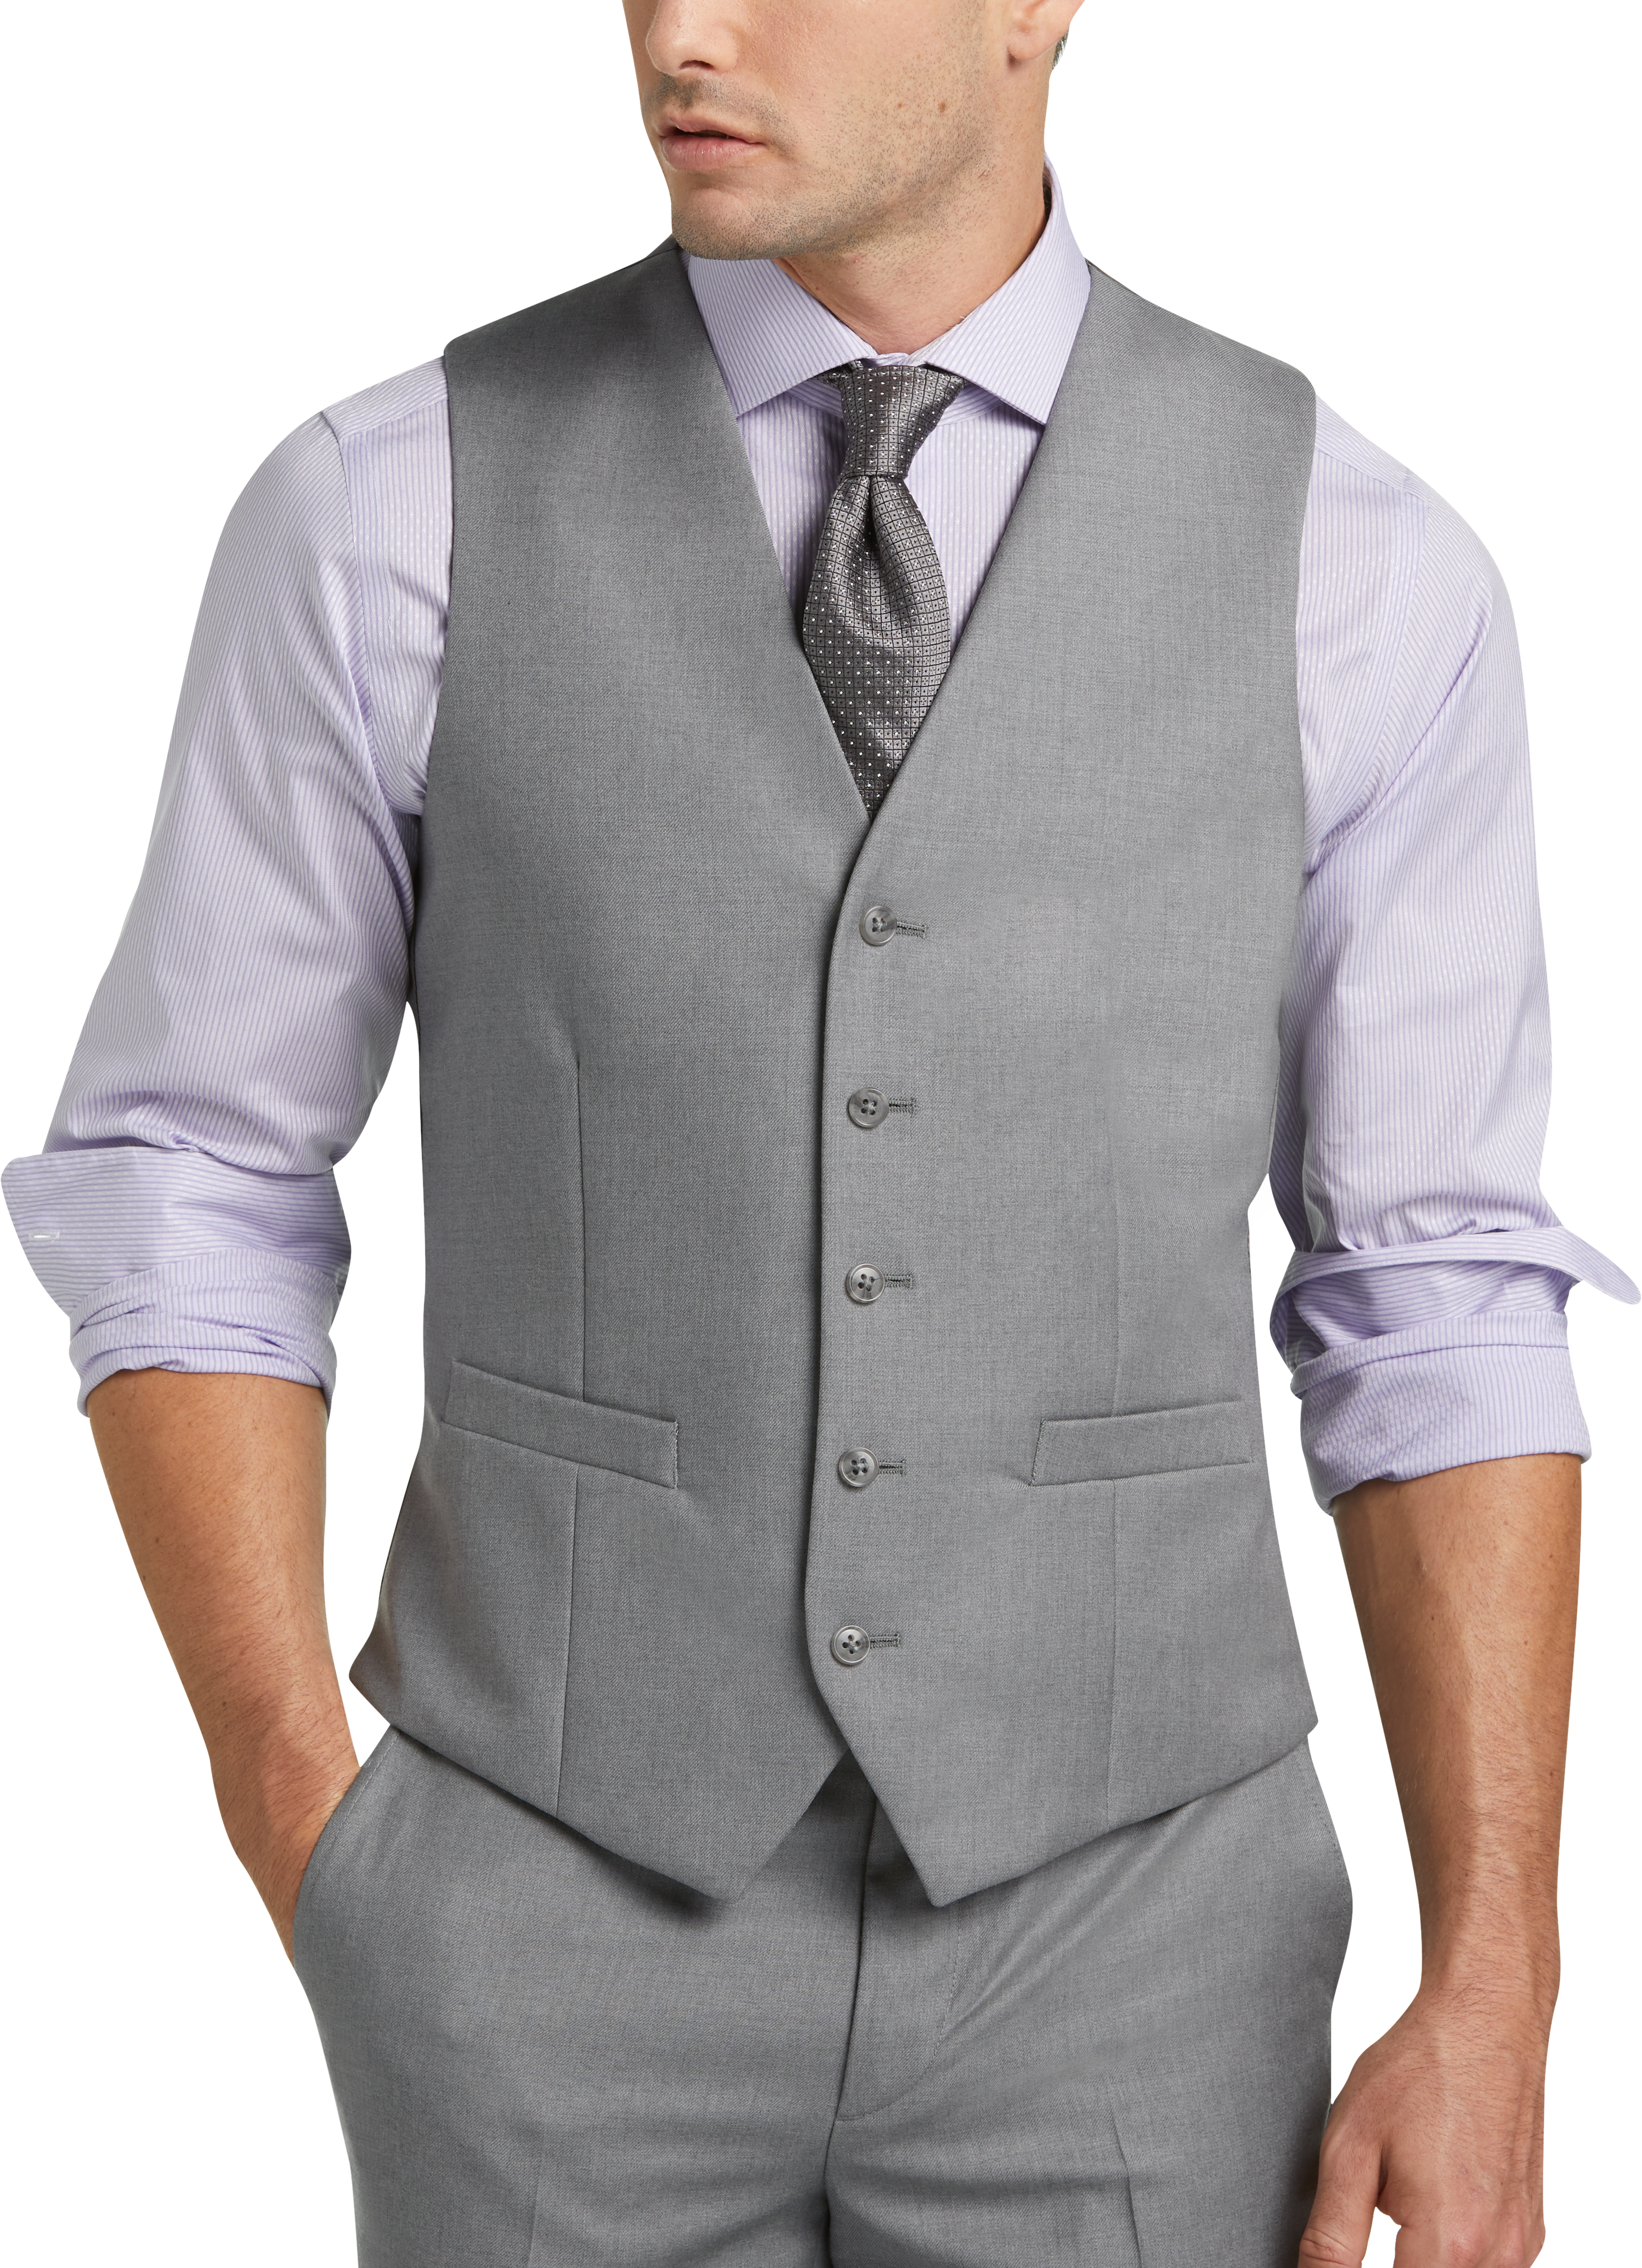 JOE Joseph Abboud Light Gray Slim Fit Suit Separates Vest - Men's Suits ...